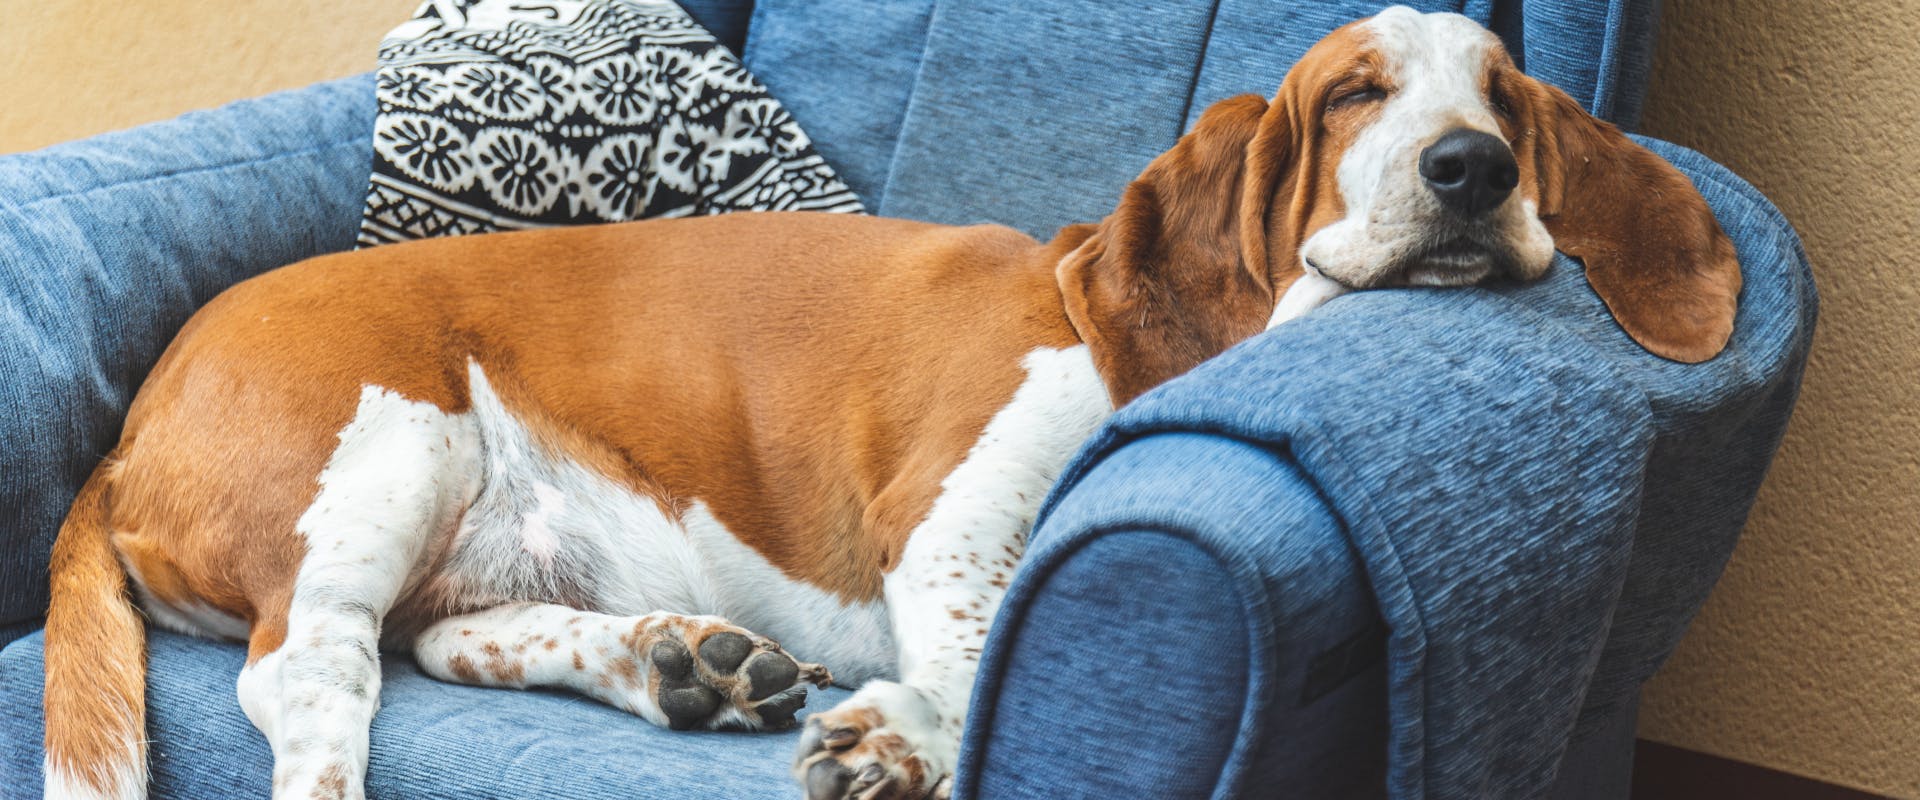 A dog sleeps in an armchair.